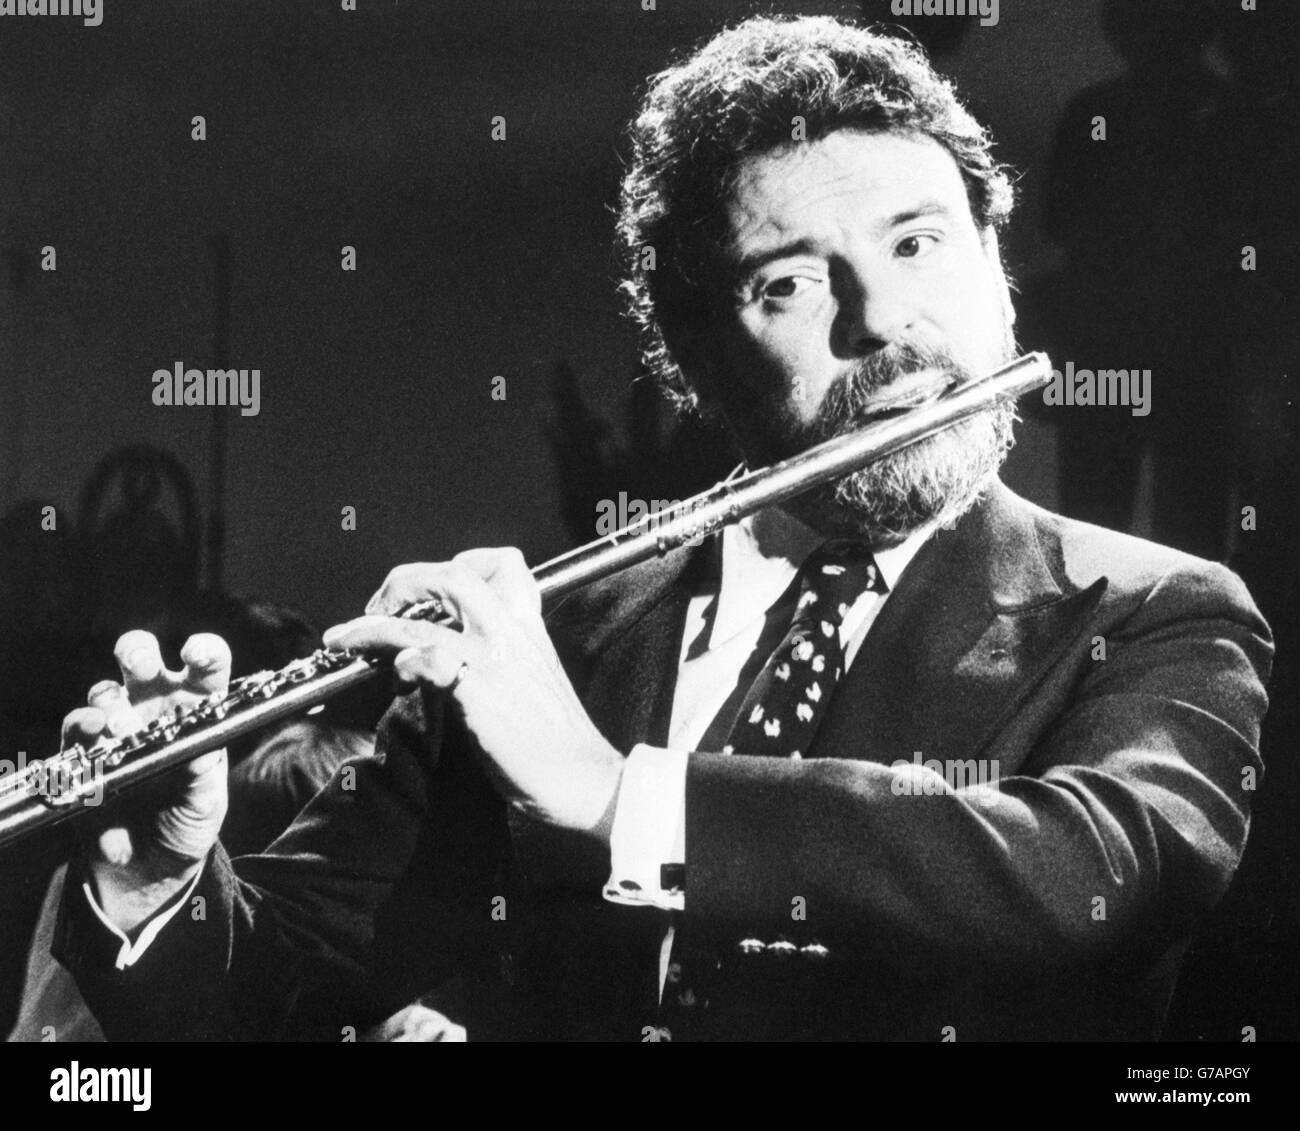 Un'immagine non datata del flauto James Galway. Foto Stock